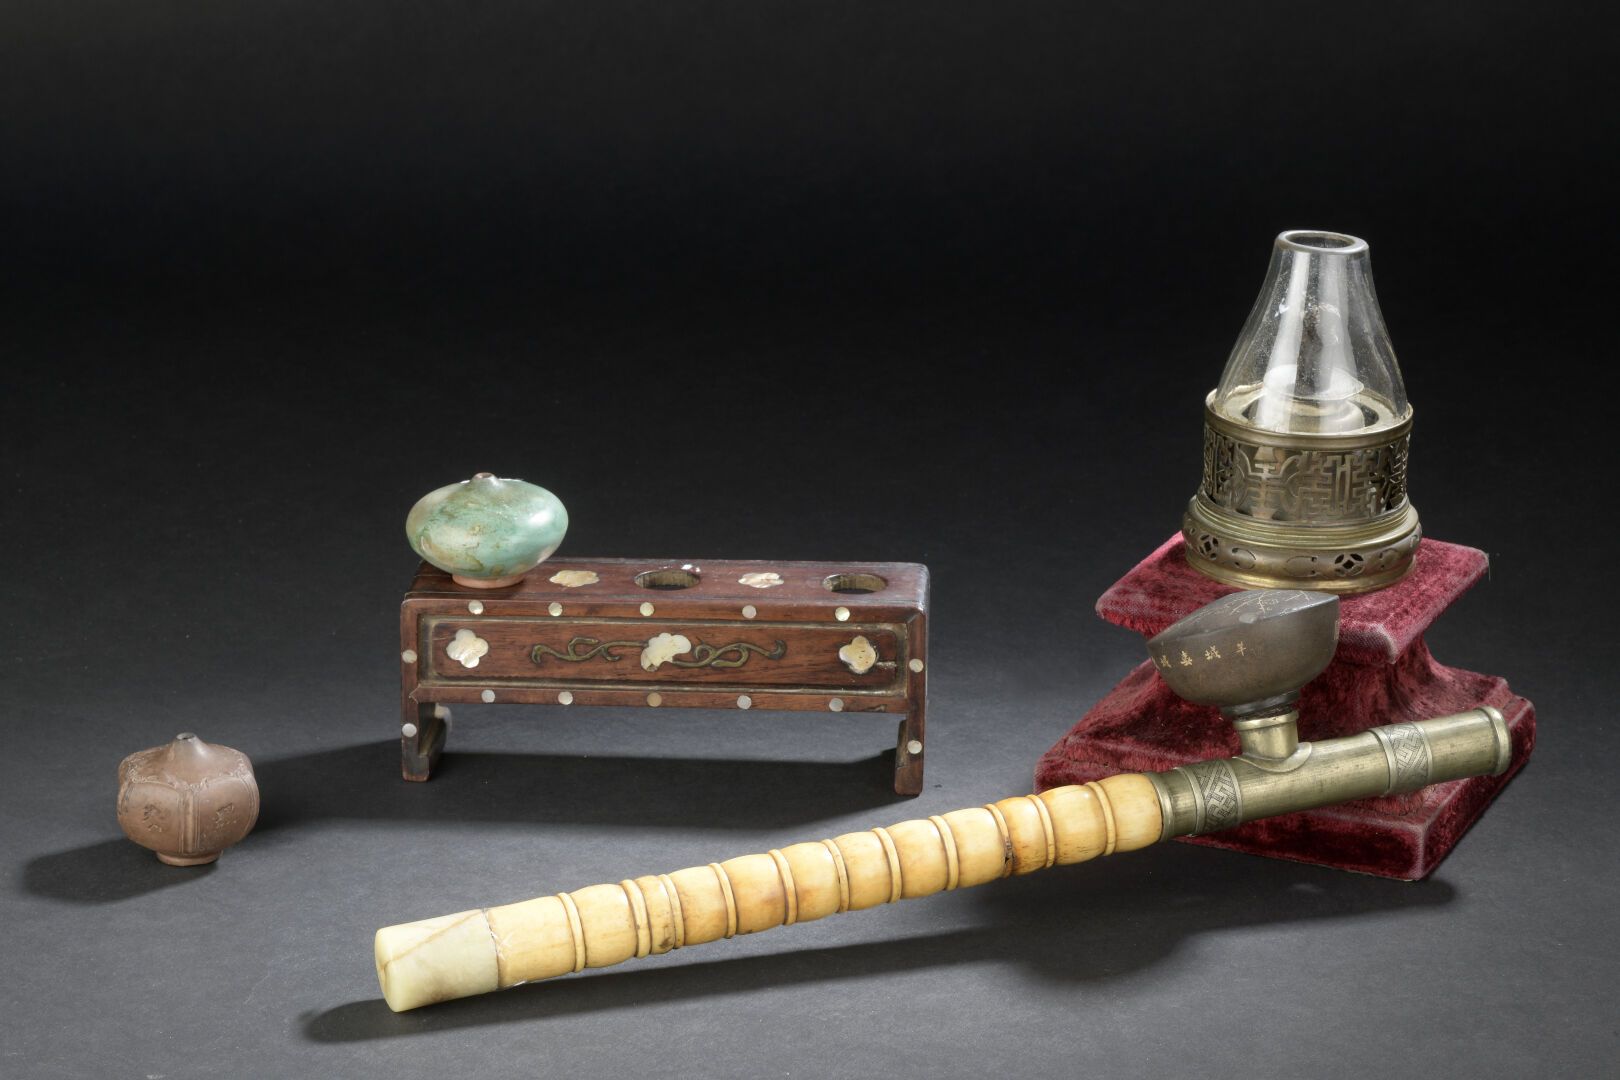 Null 鸦片管和三个炉子
中国，清末（1644-1911）。
骨质和铜质的烟斗，石质的炉子；支架和一盏灯是连在一起的。